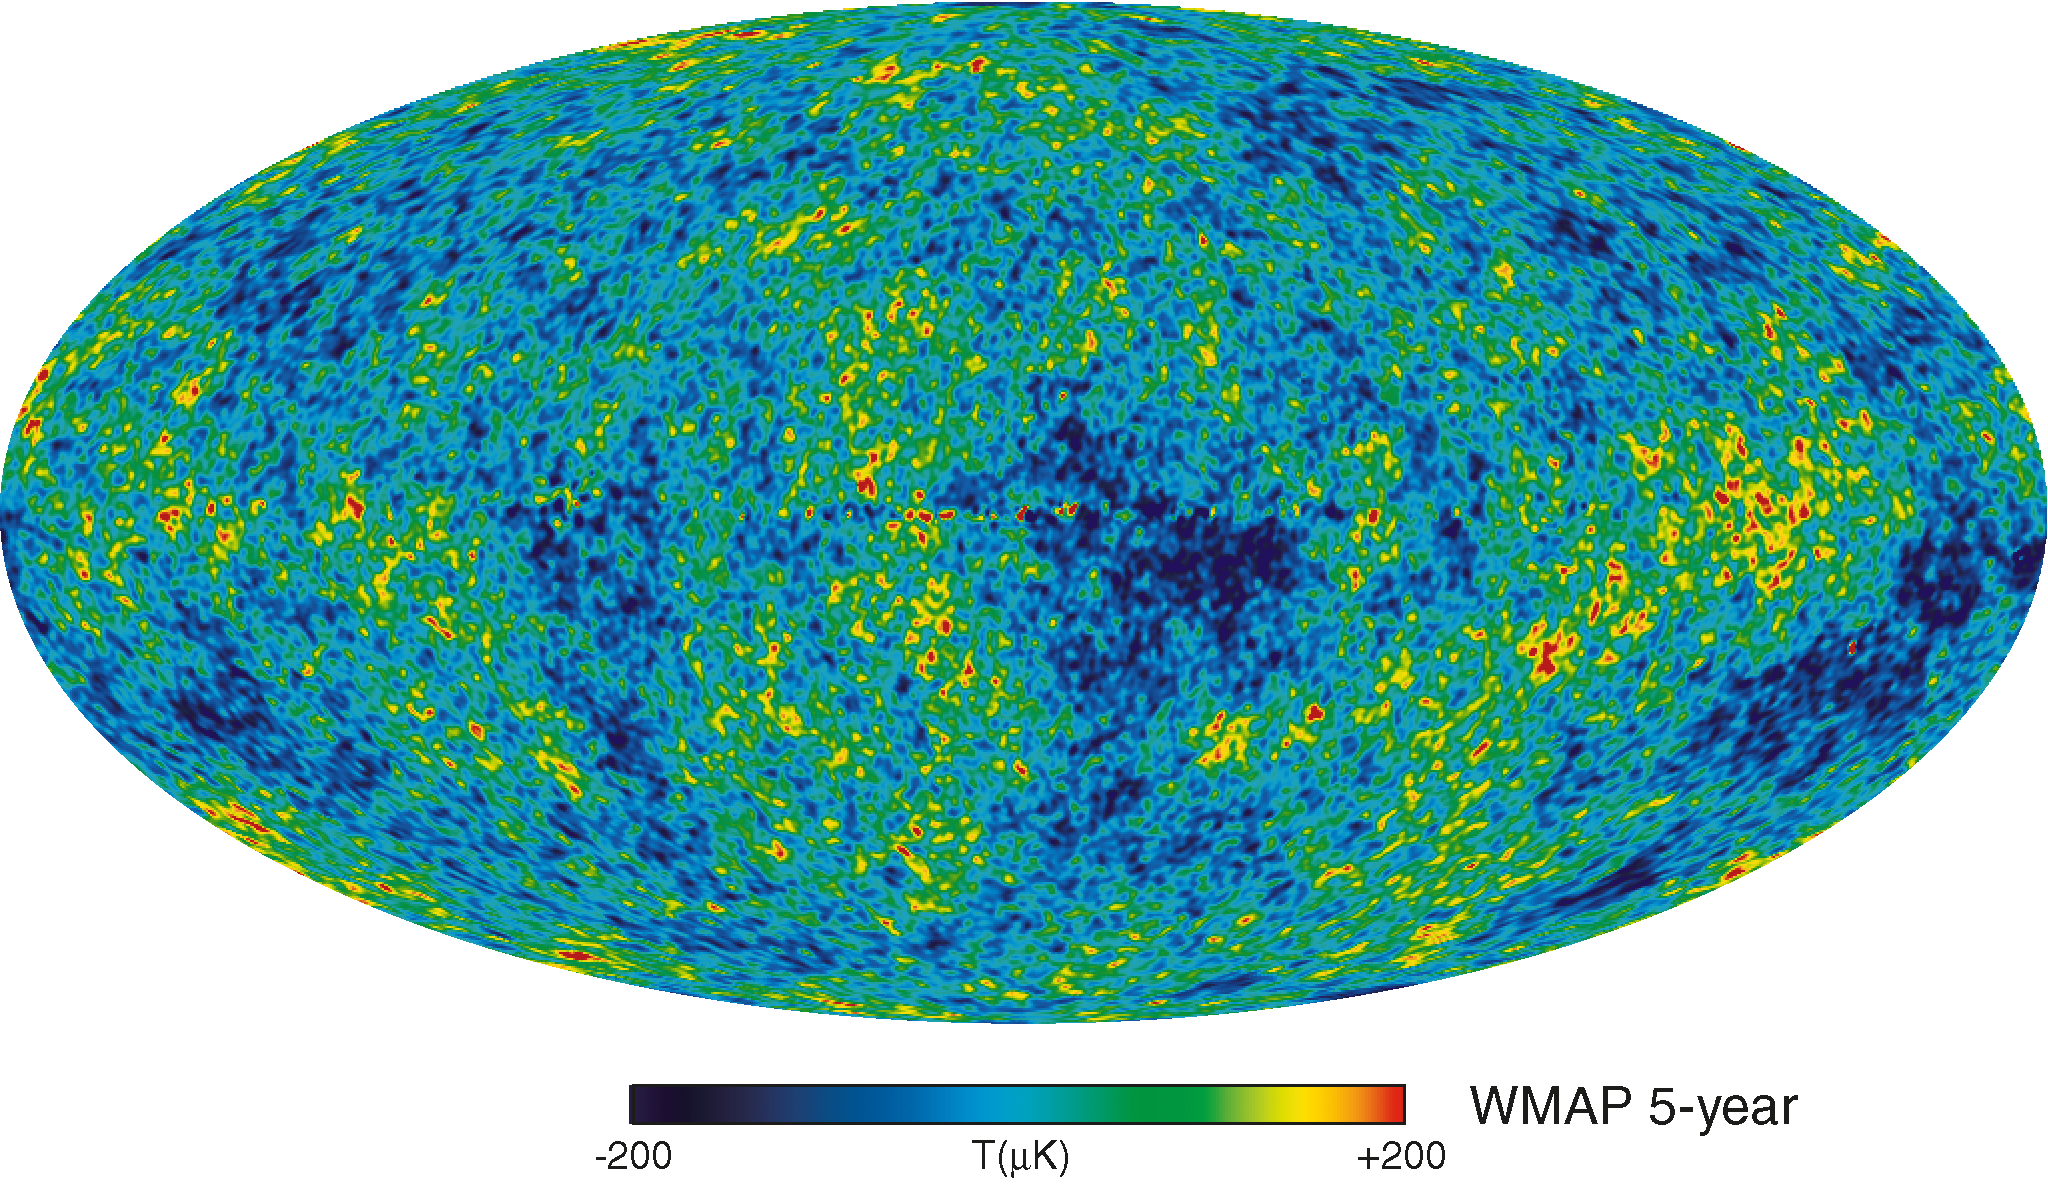 5-year WMAP CMB sky